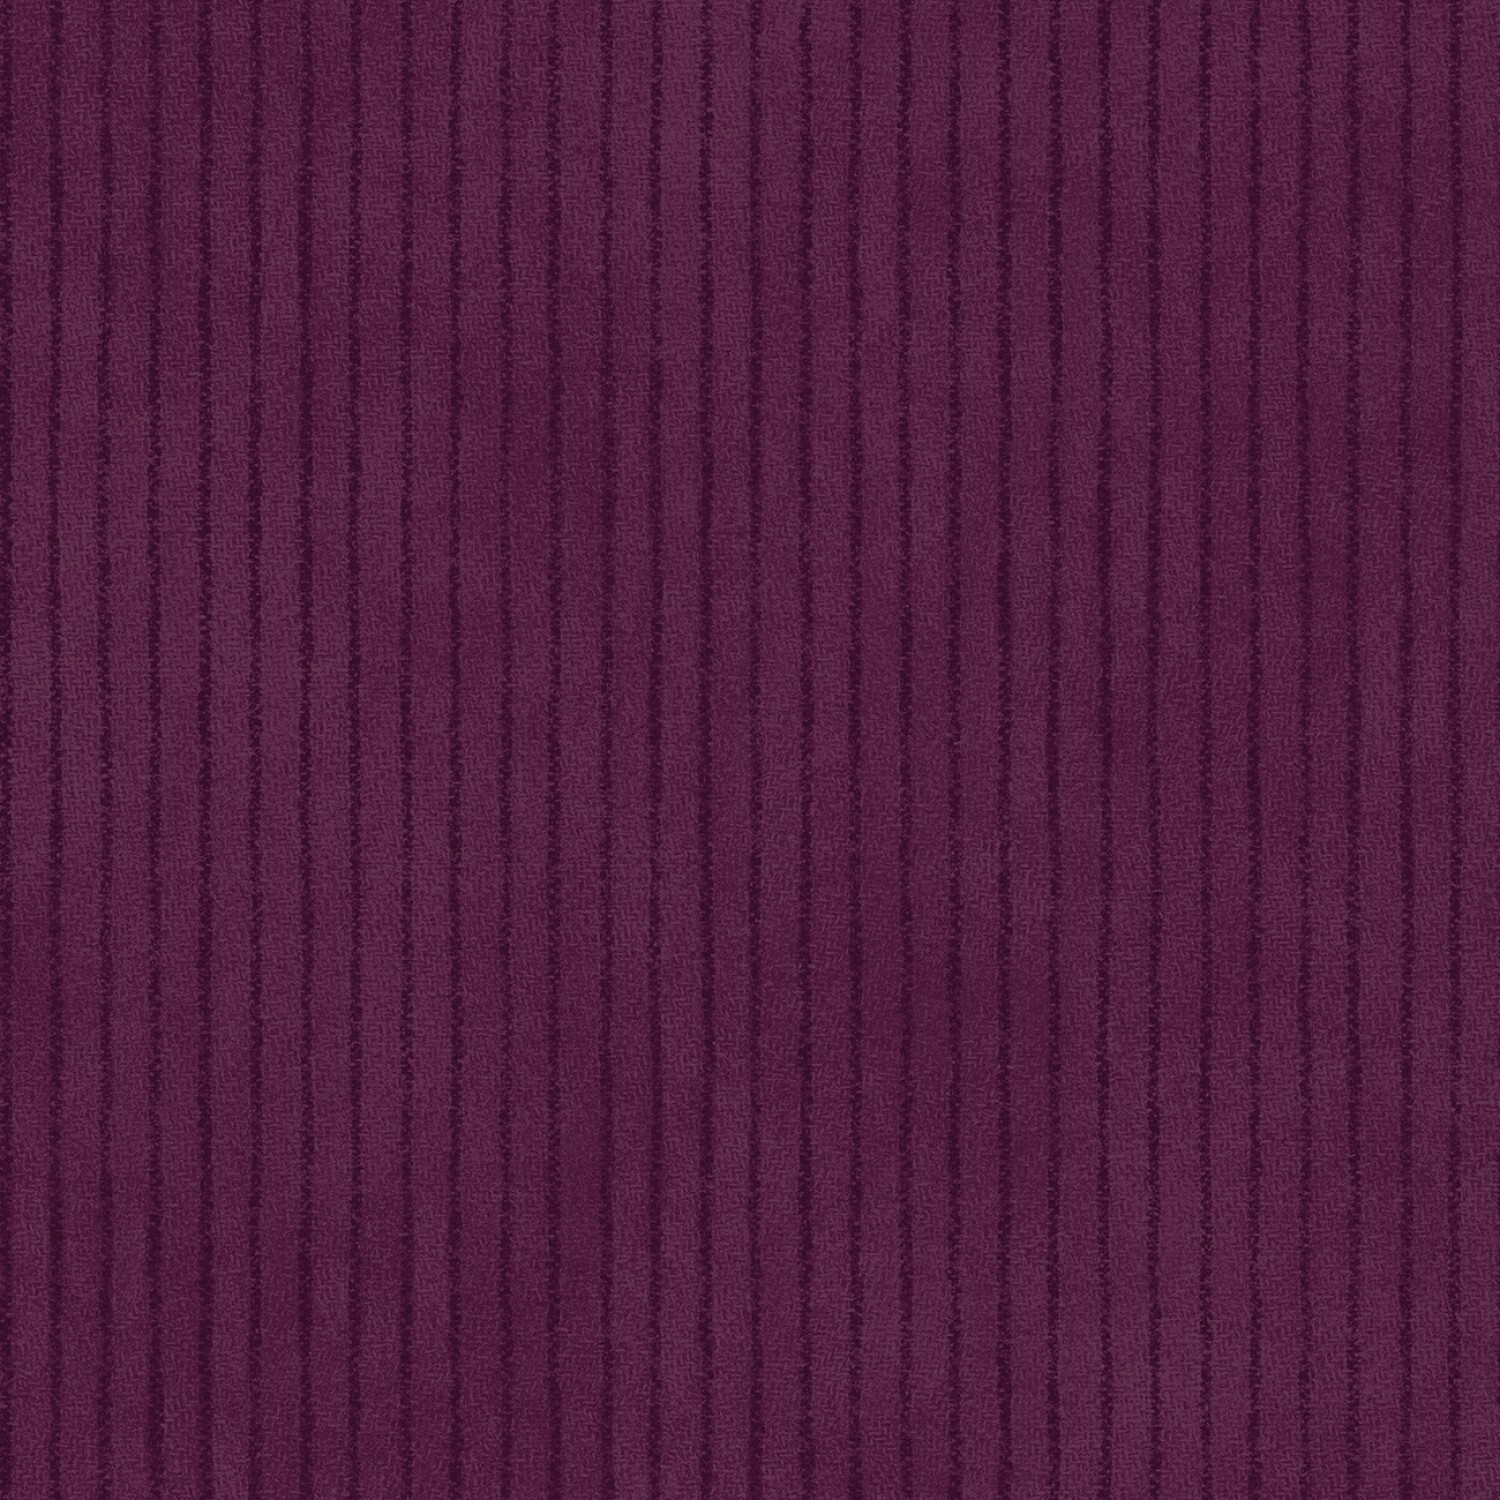 Woolies Flannel - Deep Purple Stripe - 1/2m cut 58207